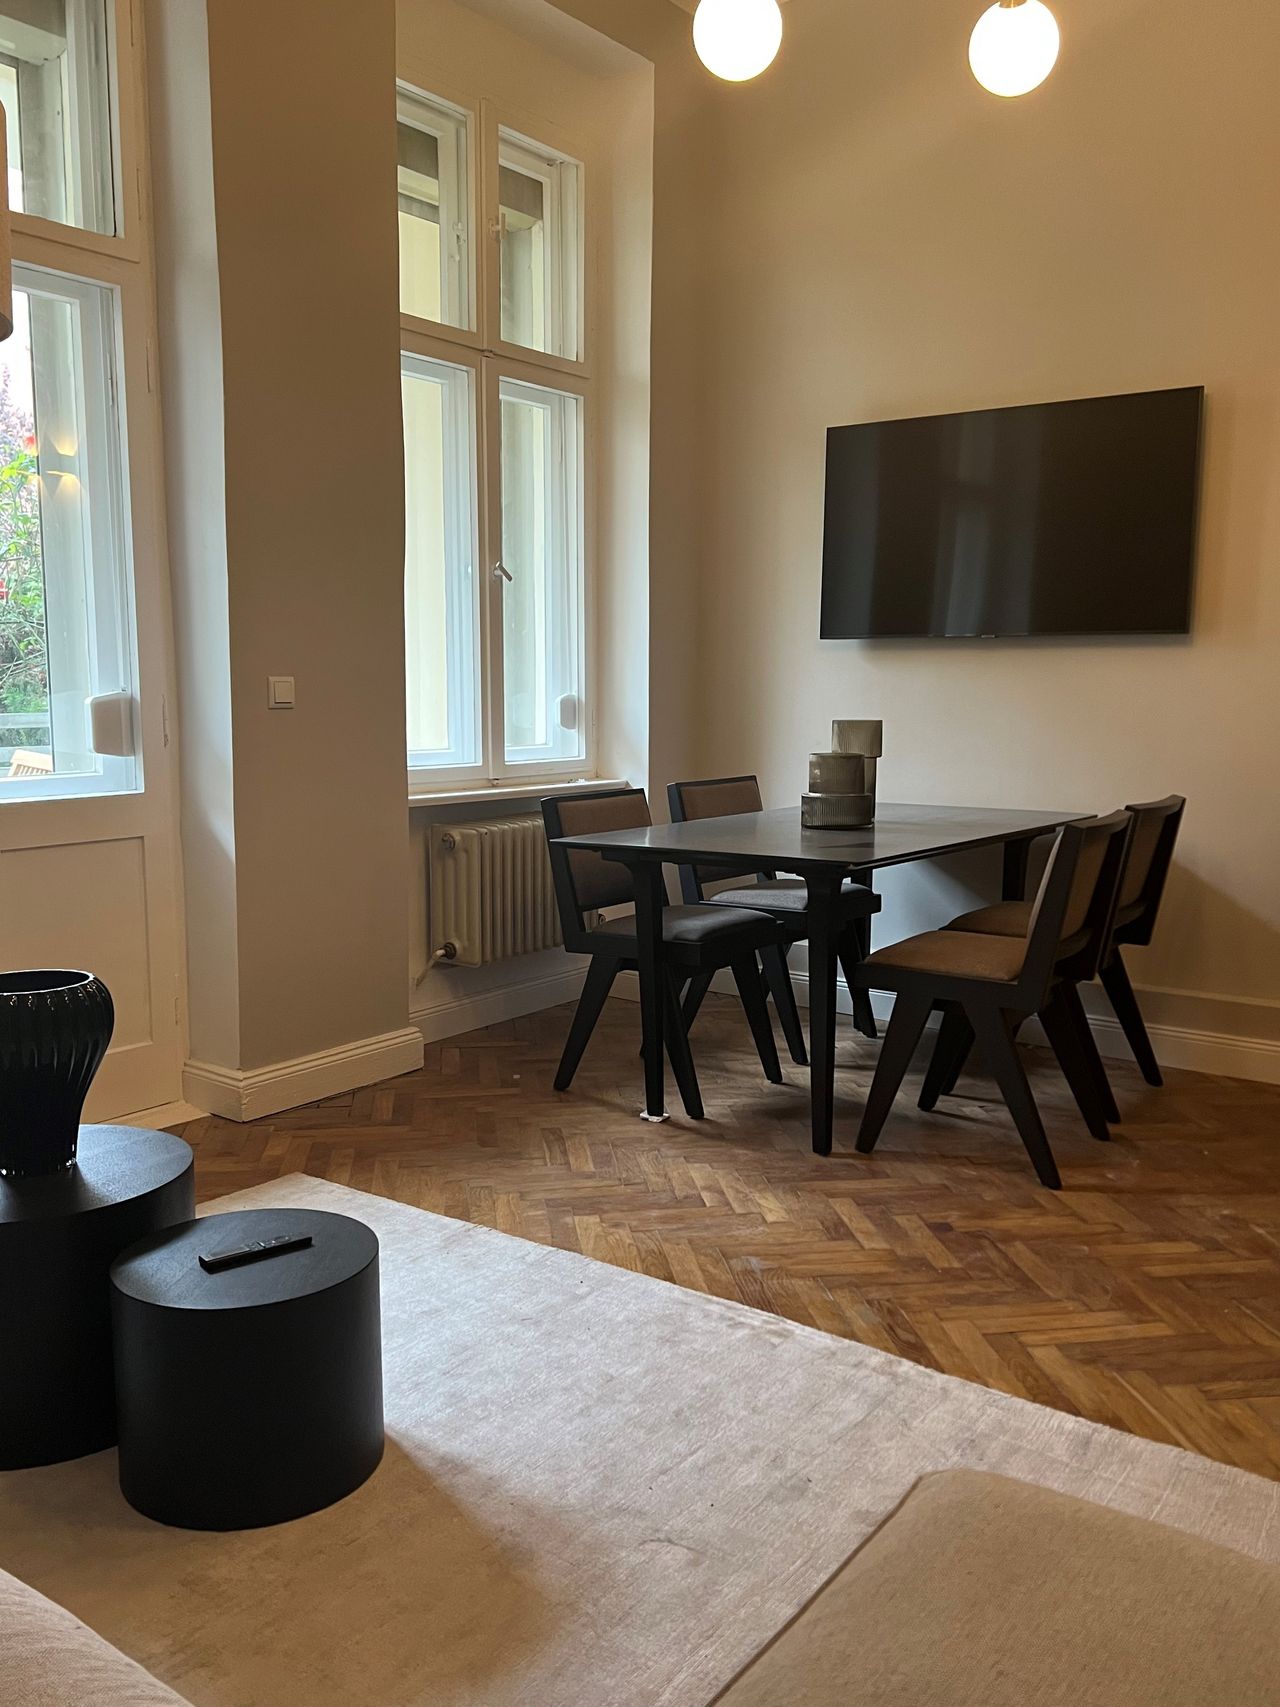 Beautiful furnished apartment in Schöneberg!